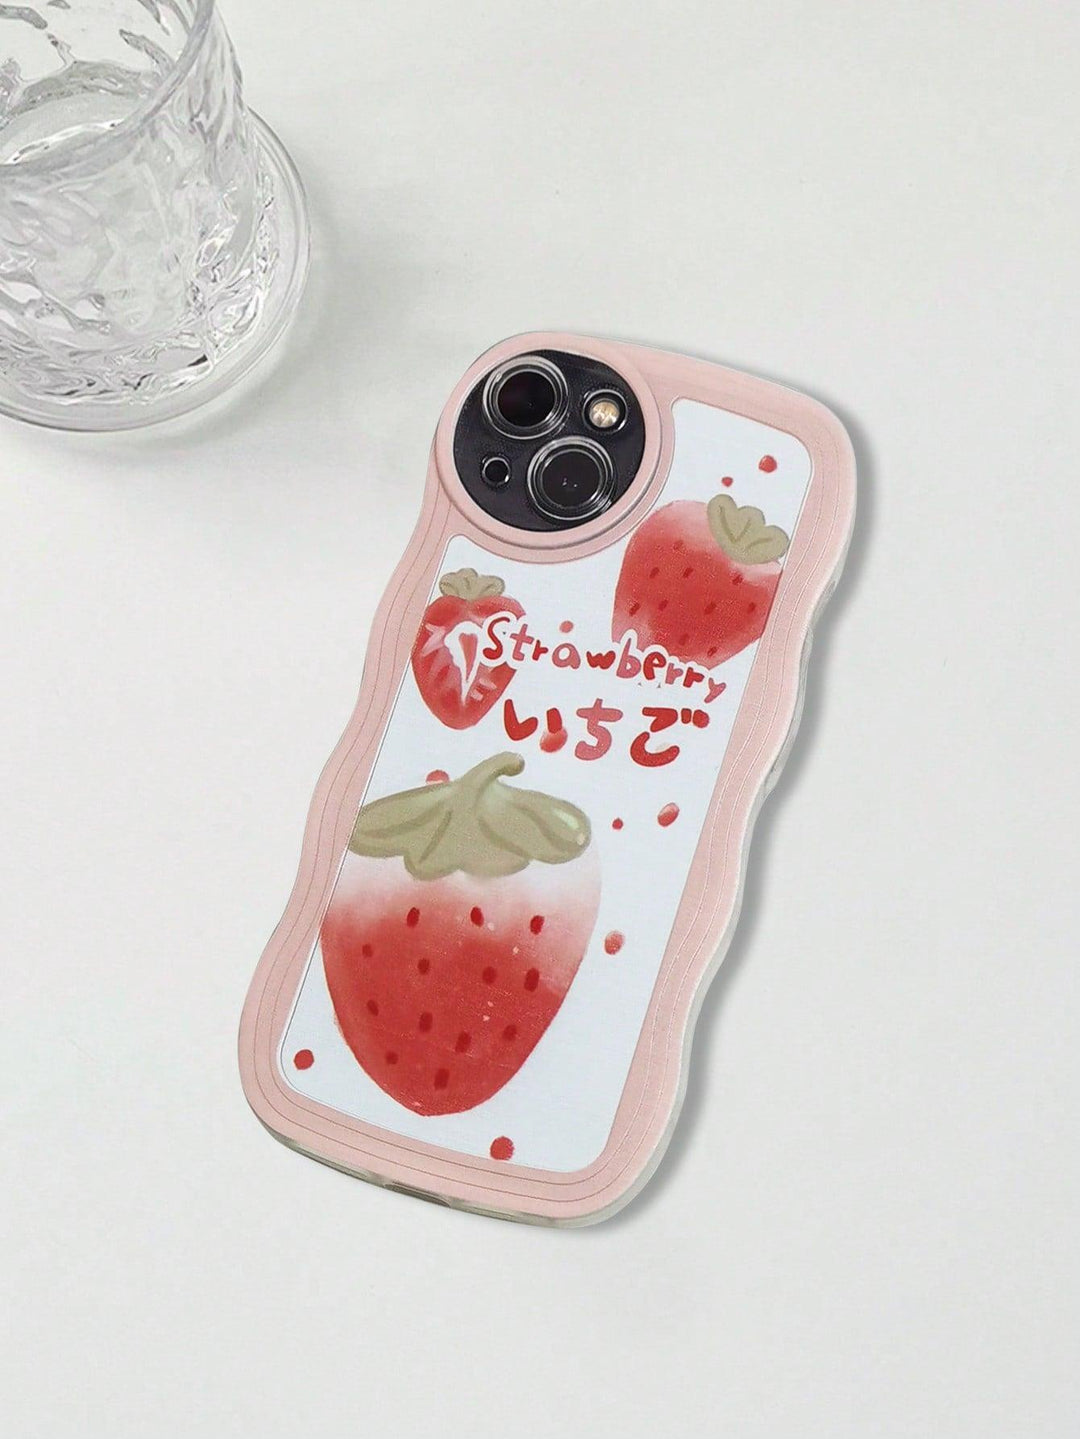 Premium Cartoon Bear Rabbit Multicolor Phone Cases - Brand My Case